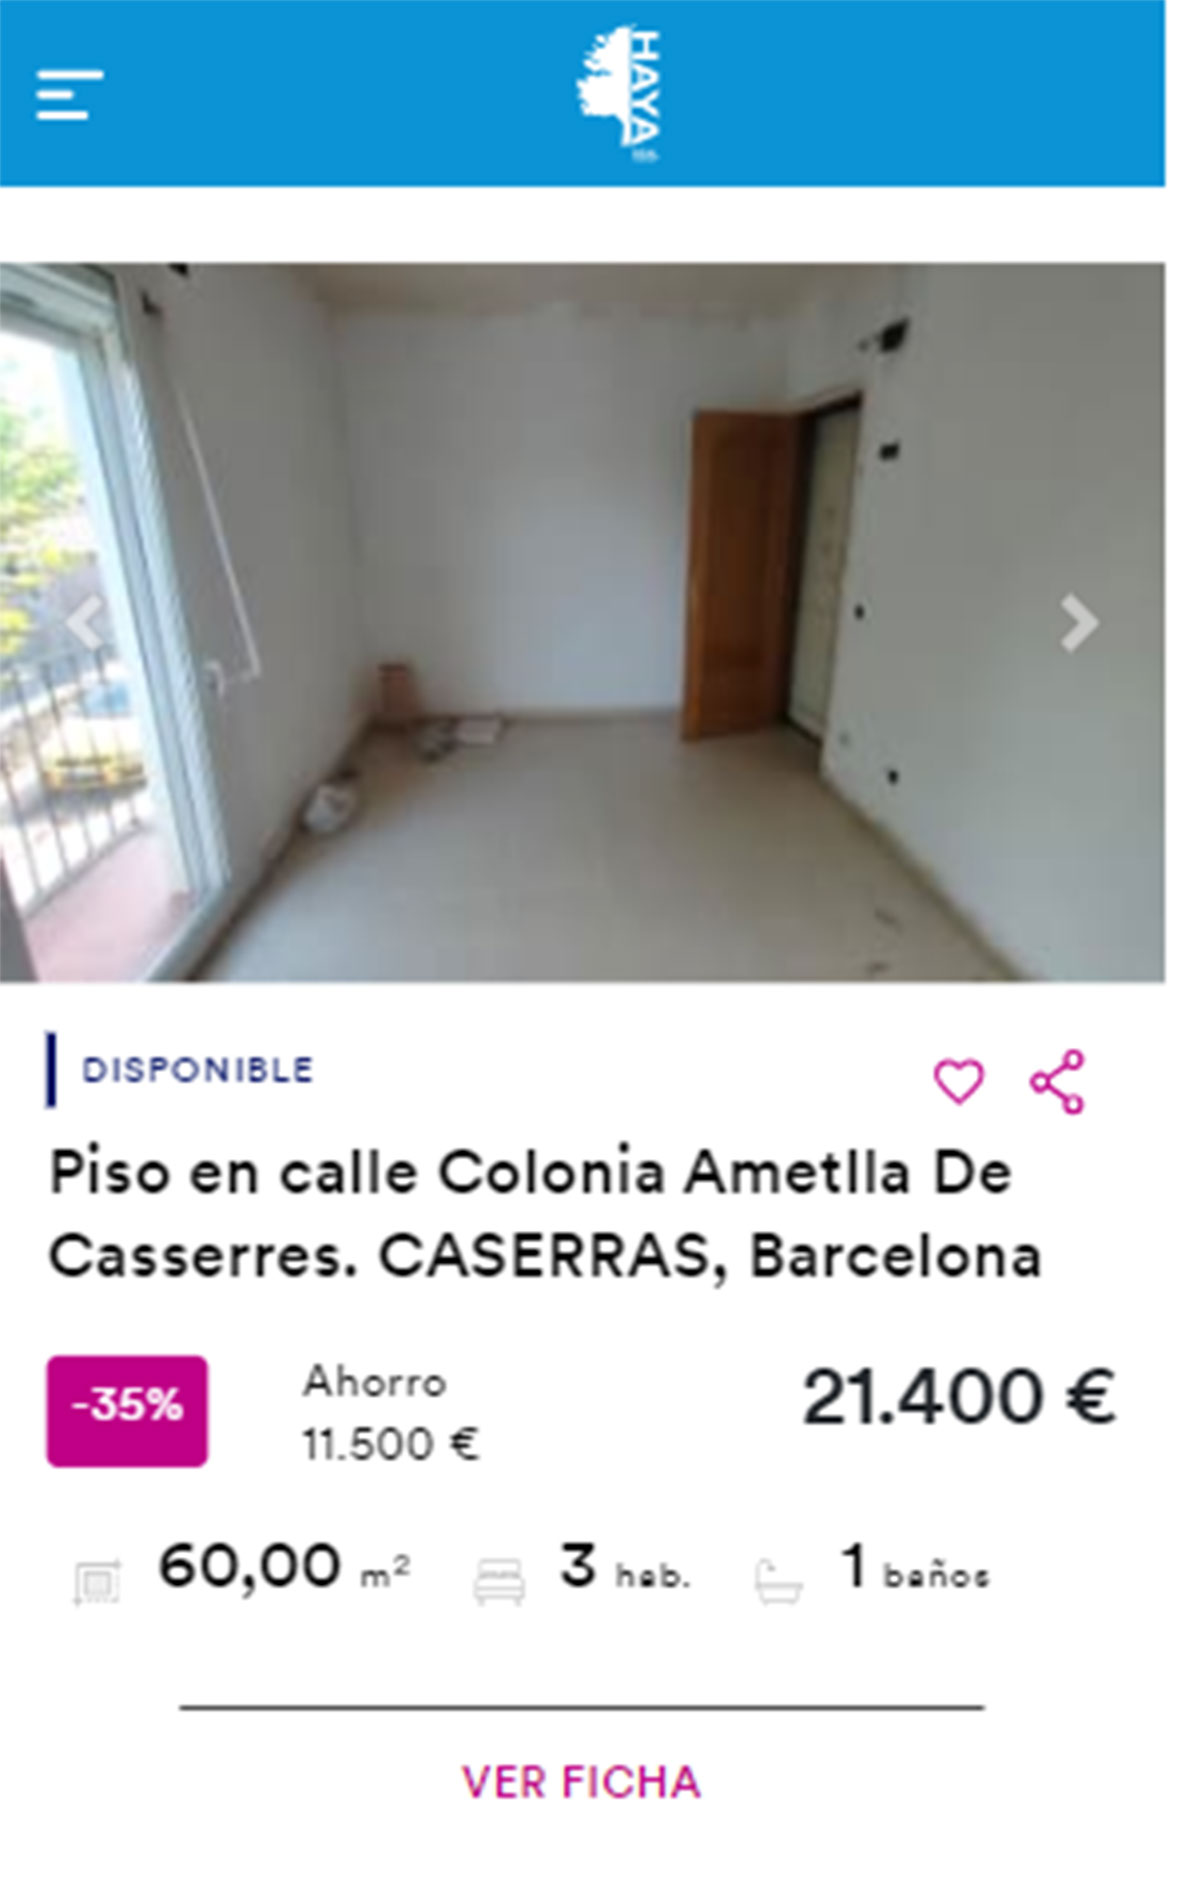 Piso en Barcelona por 22.000 euros